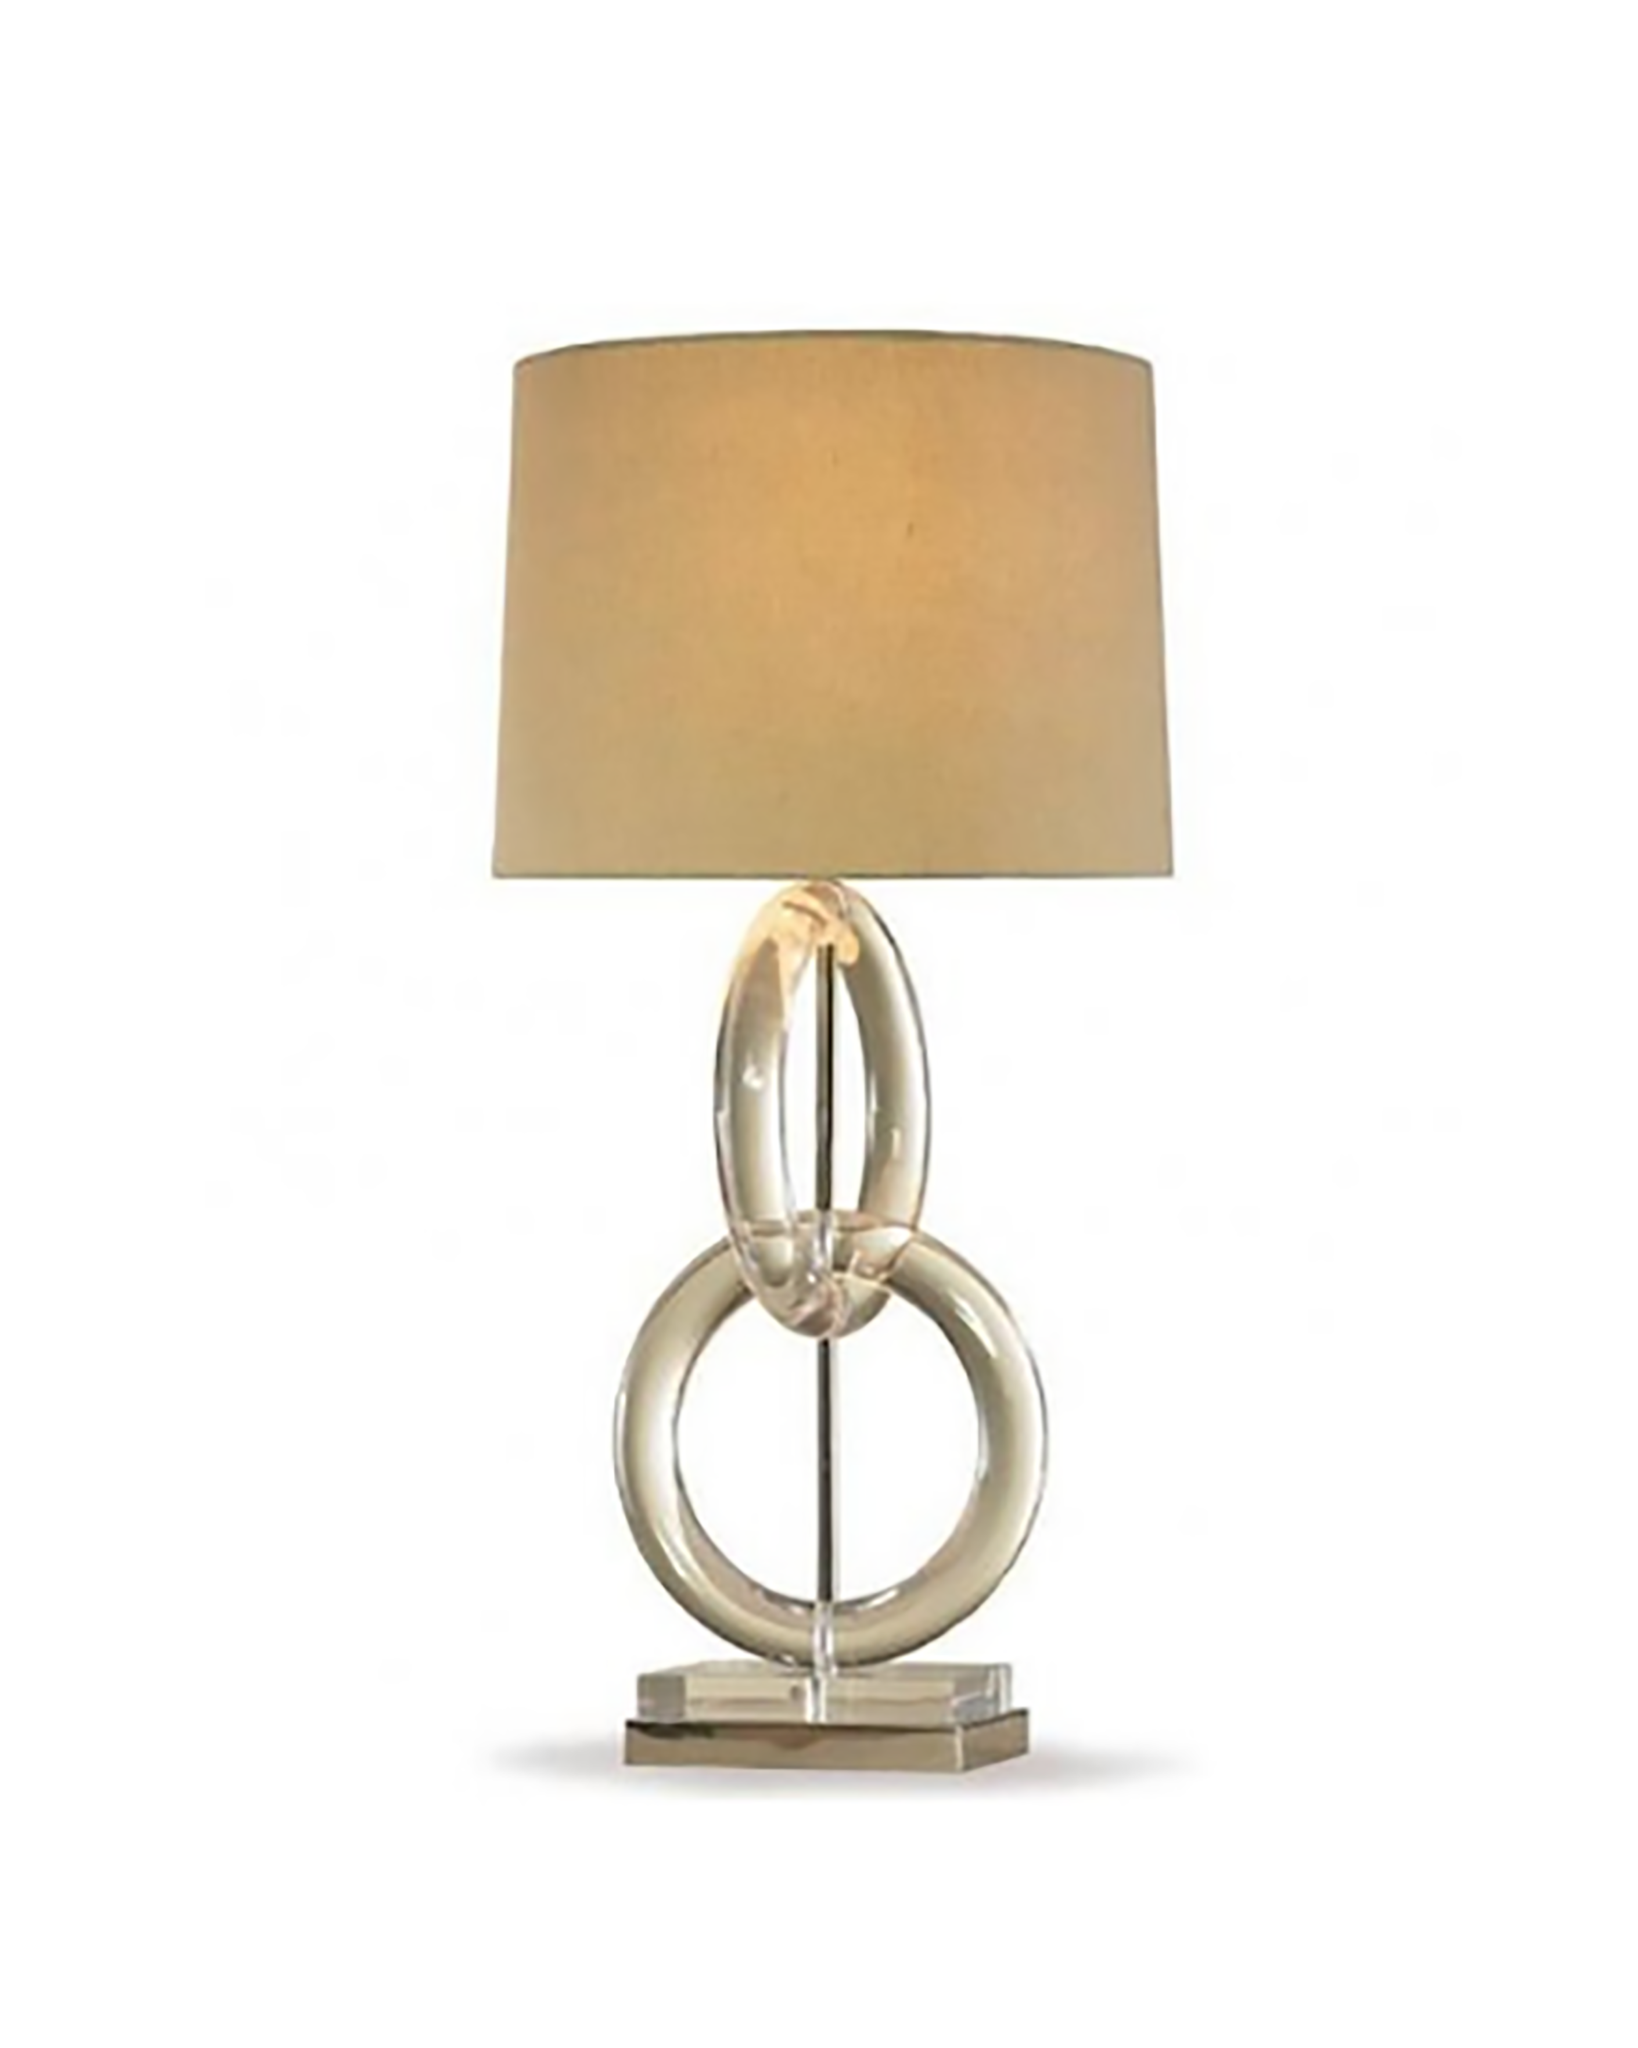 Tabletop lamp